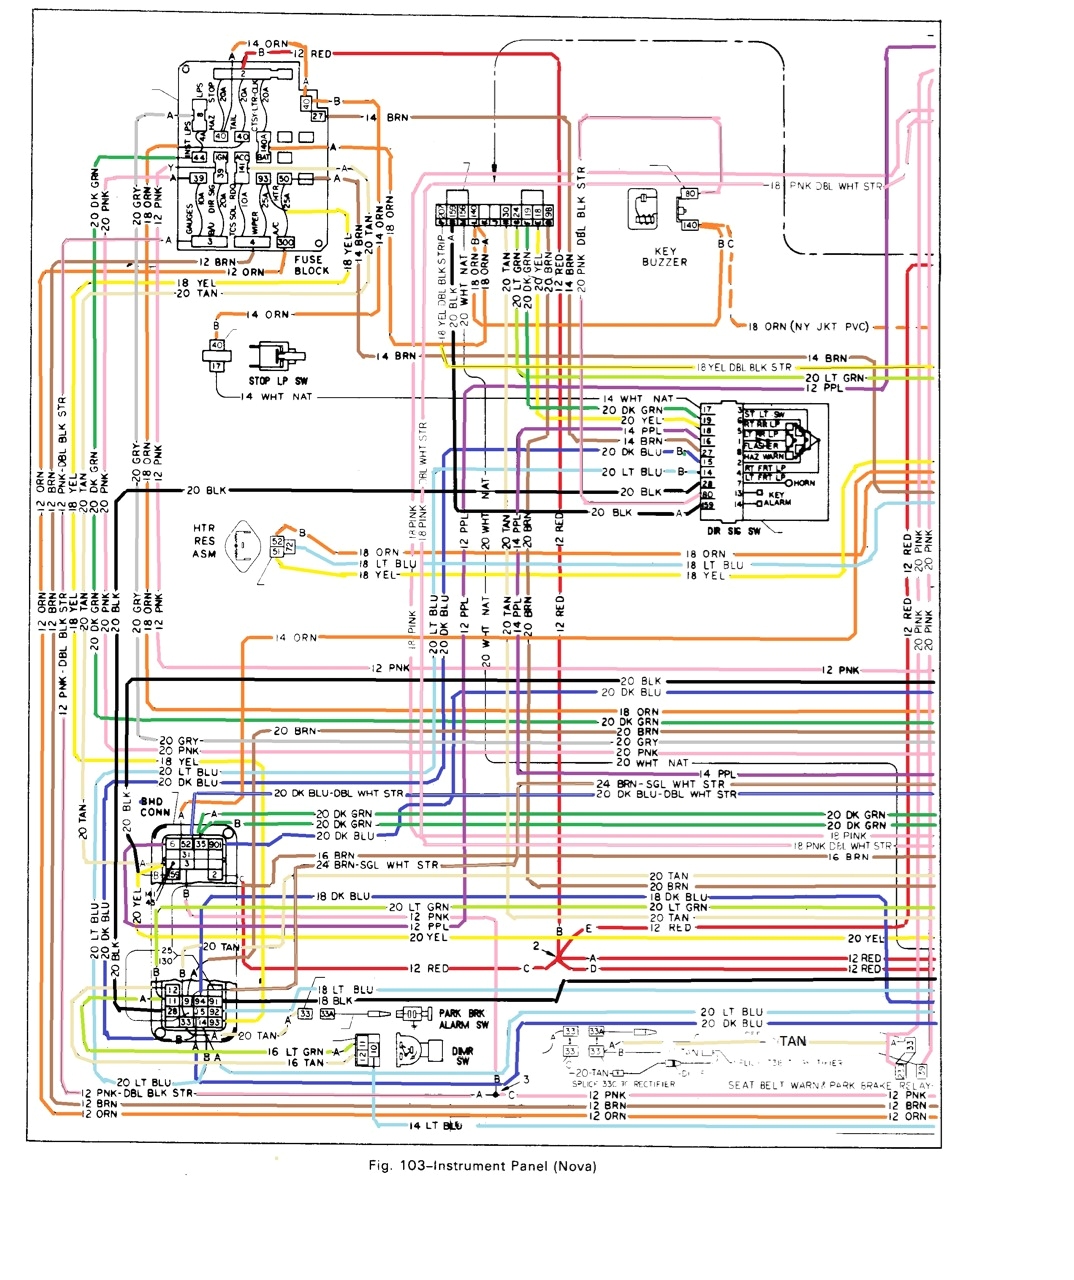 1964 impala ac wiring diagram free download wiring diagram view mix 1965 impala ac wiring diagram